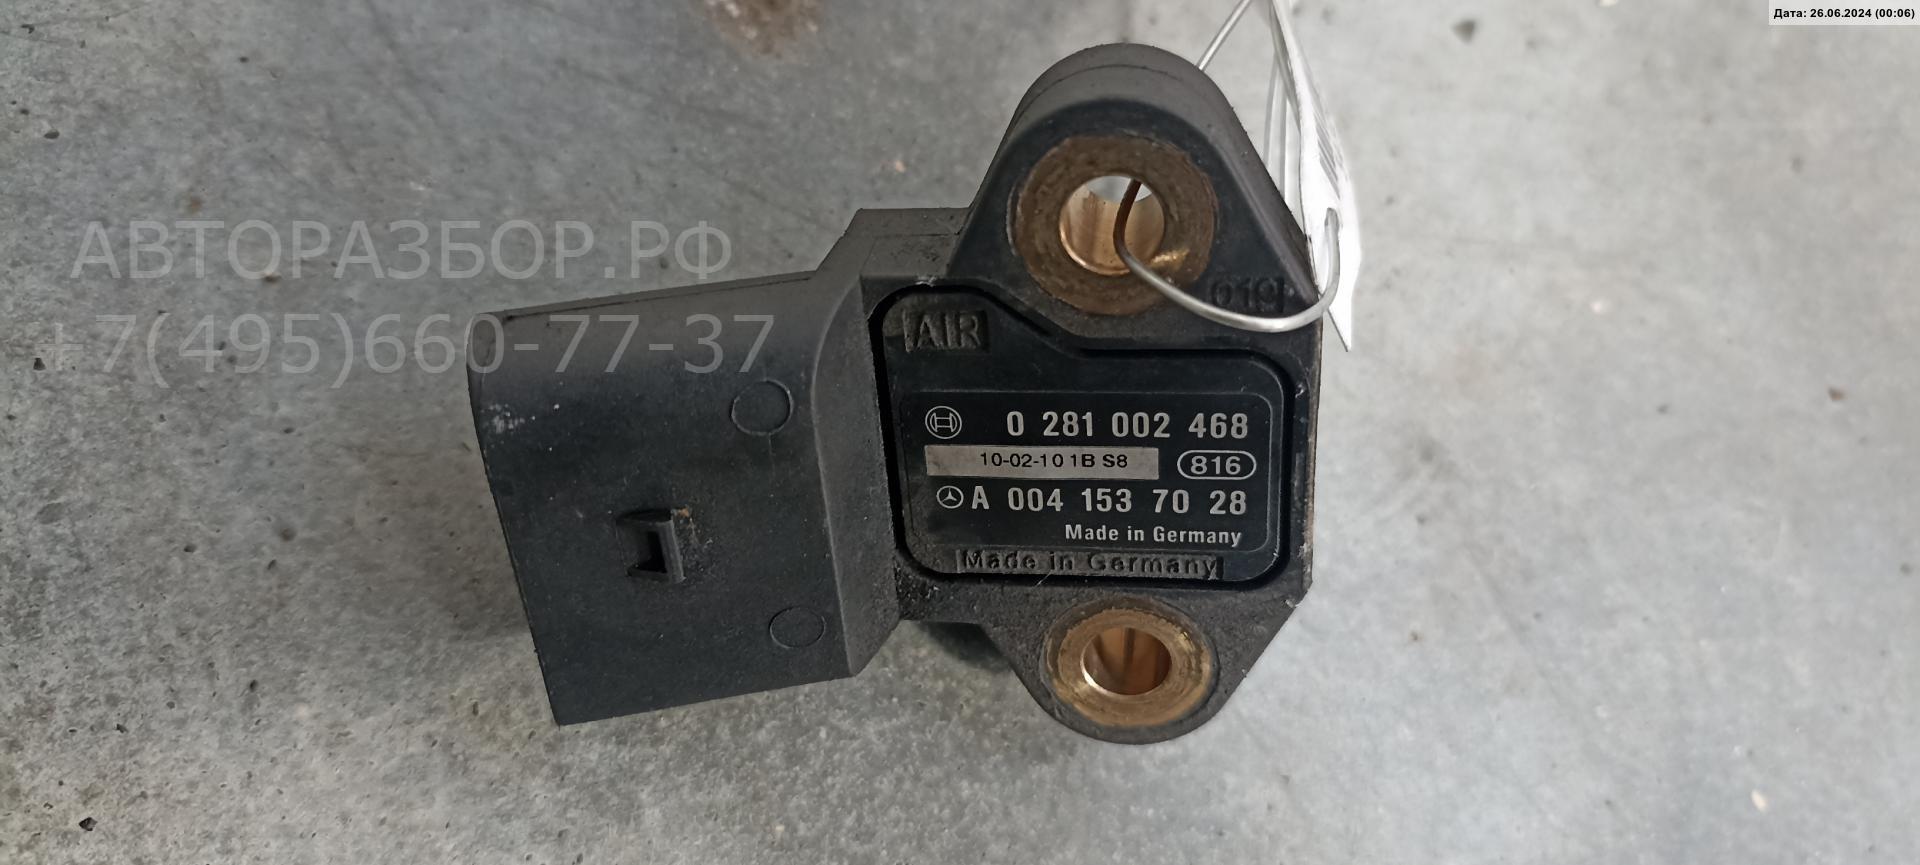 Датчик давления AP-0013504766